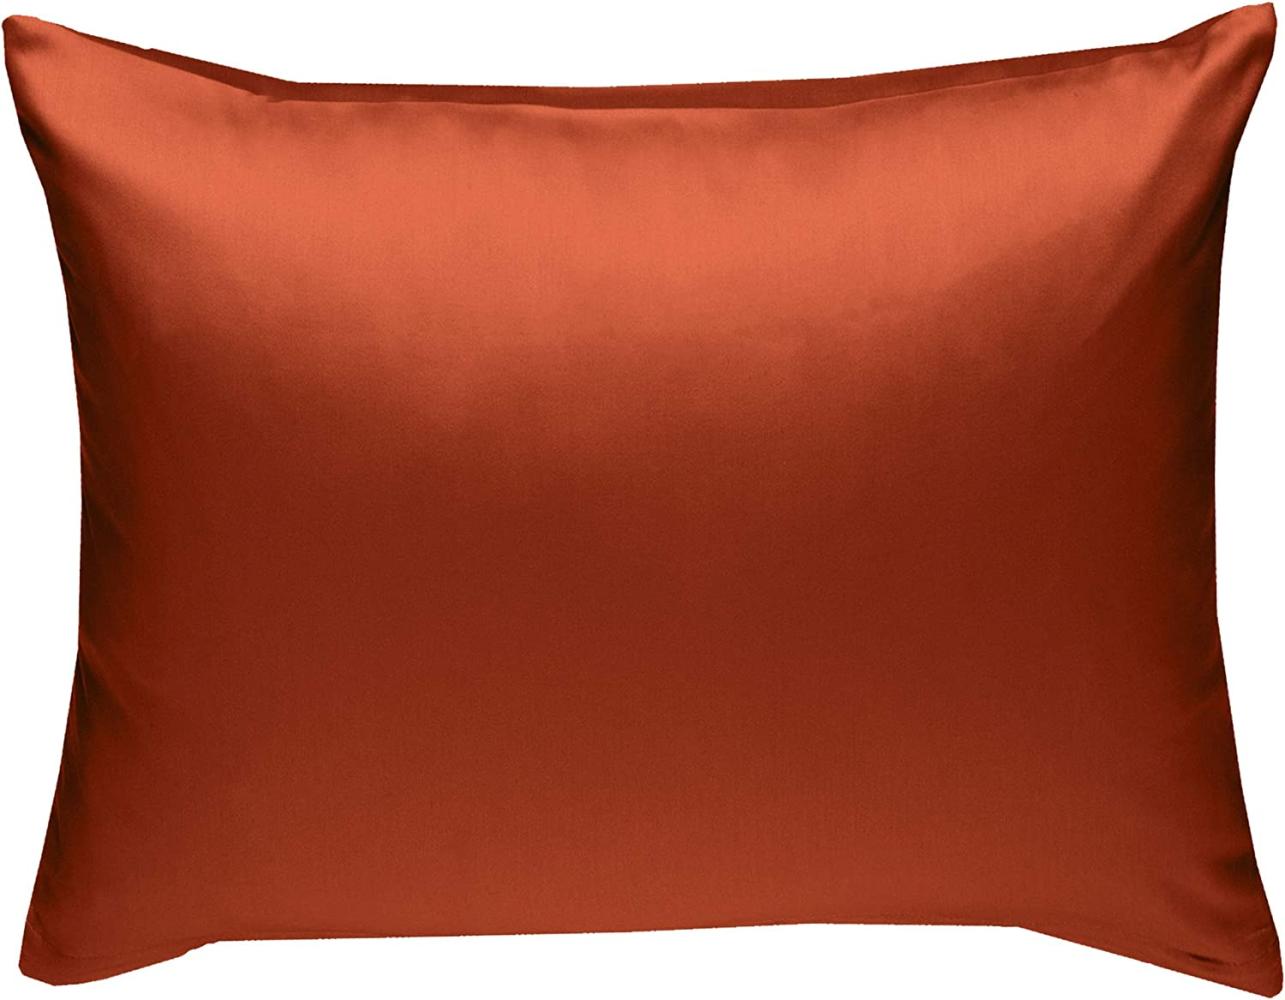 Bettwaesche-mit-Stil Mako-Satin / Baumwollsatin Bettwäsche uni / einfarbig orange Kissenbezug 70x90 cm Bild 1